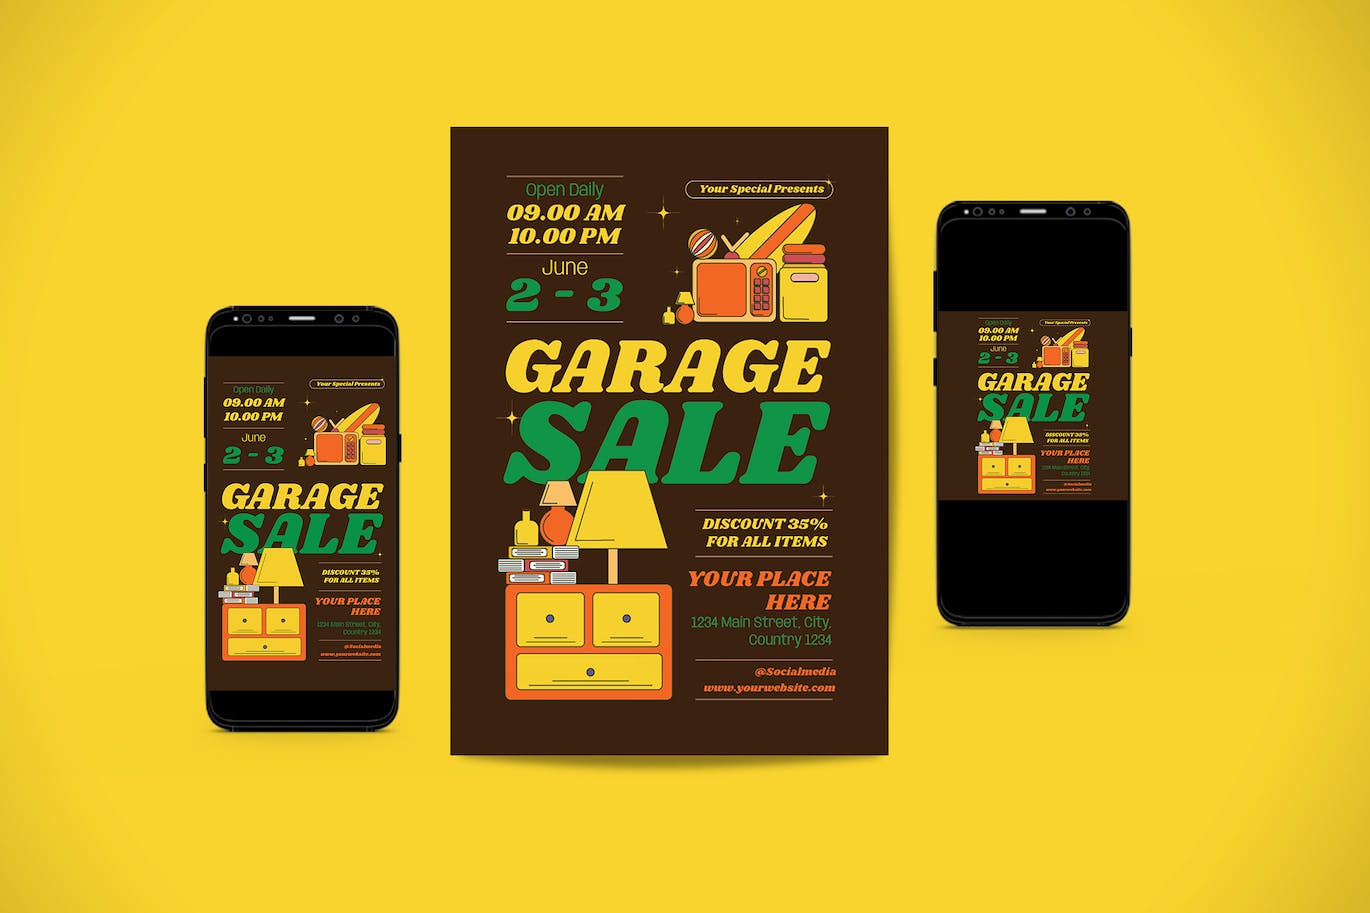 旧产品出售海报模板下载 Garage Sale Flyer Set 设计素材 第1张